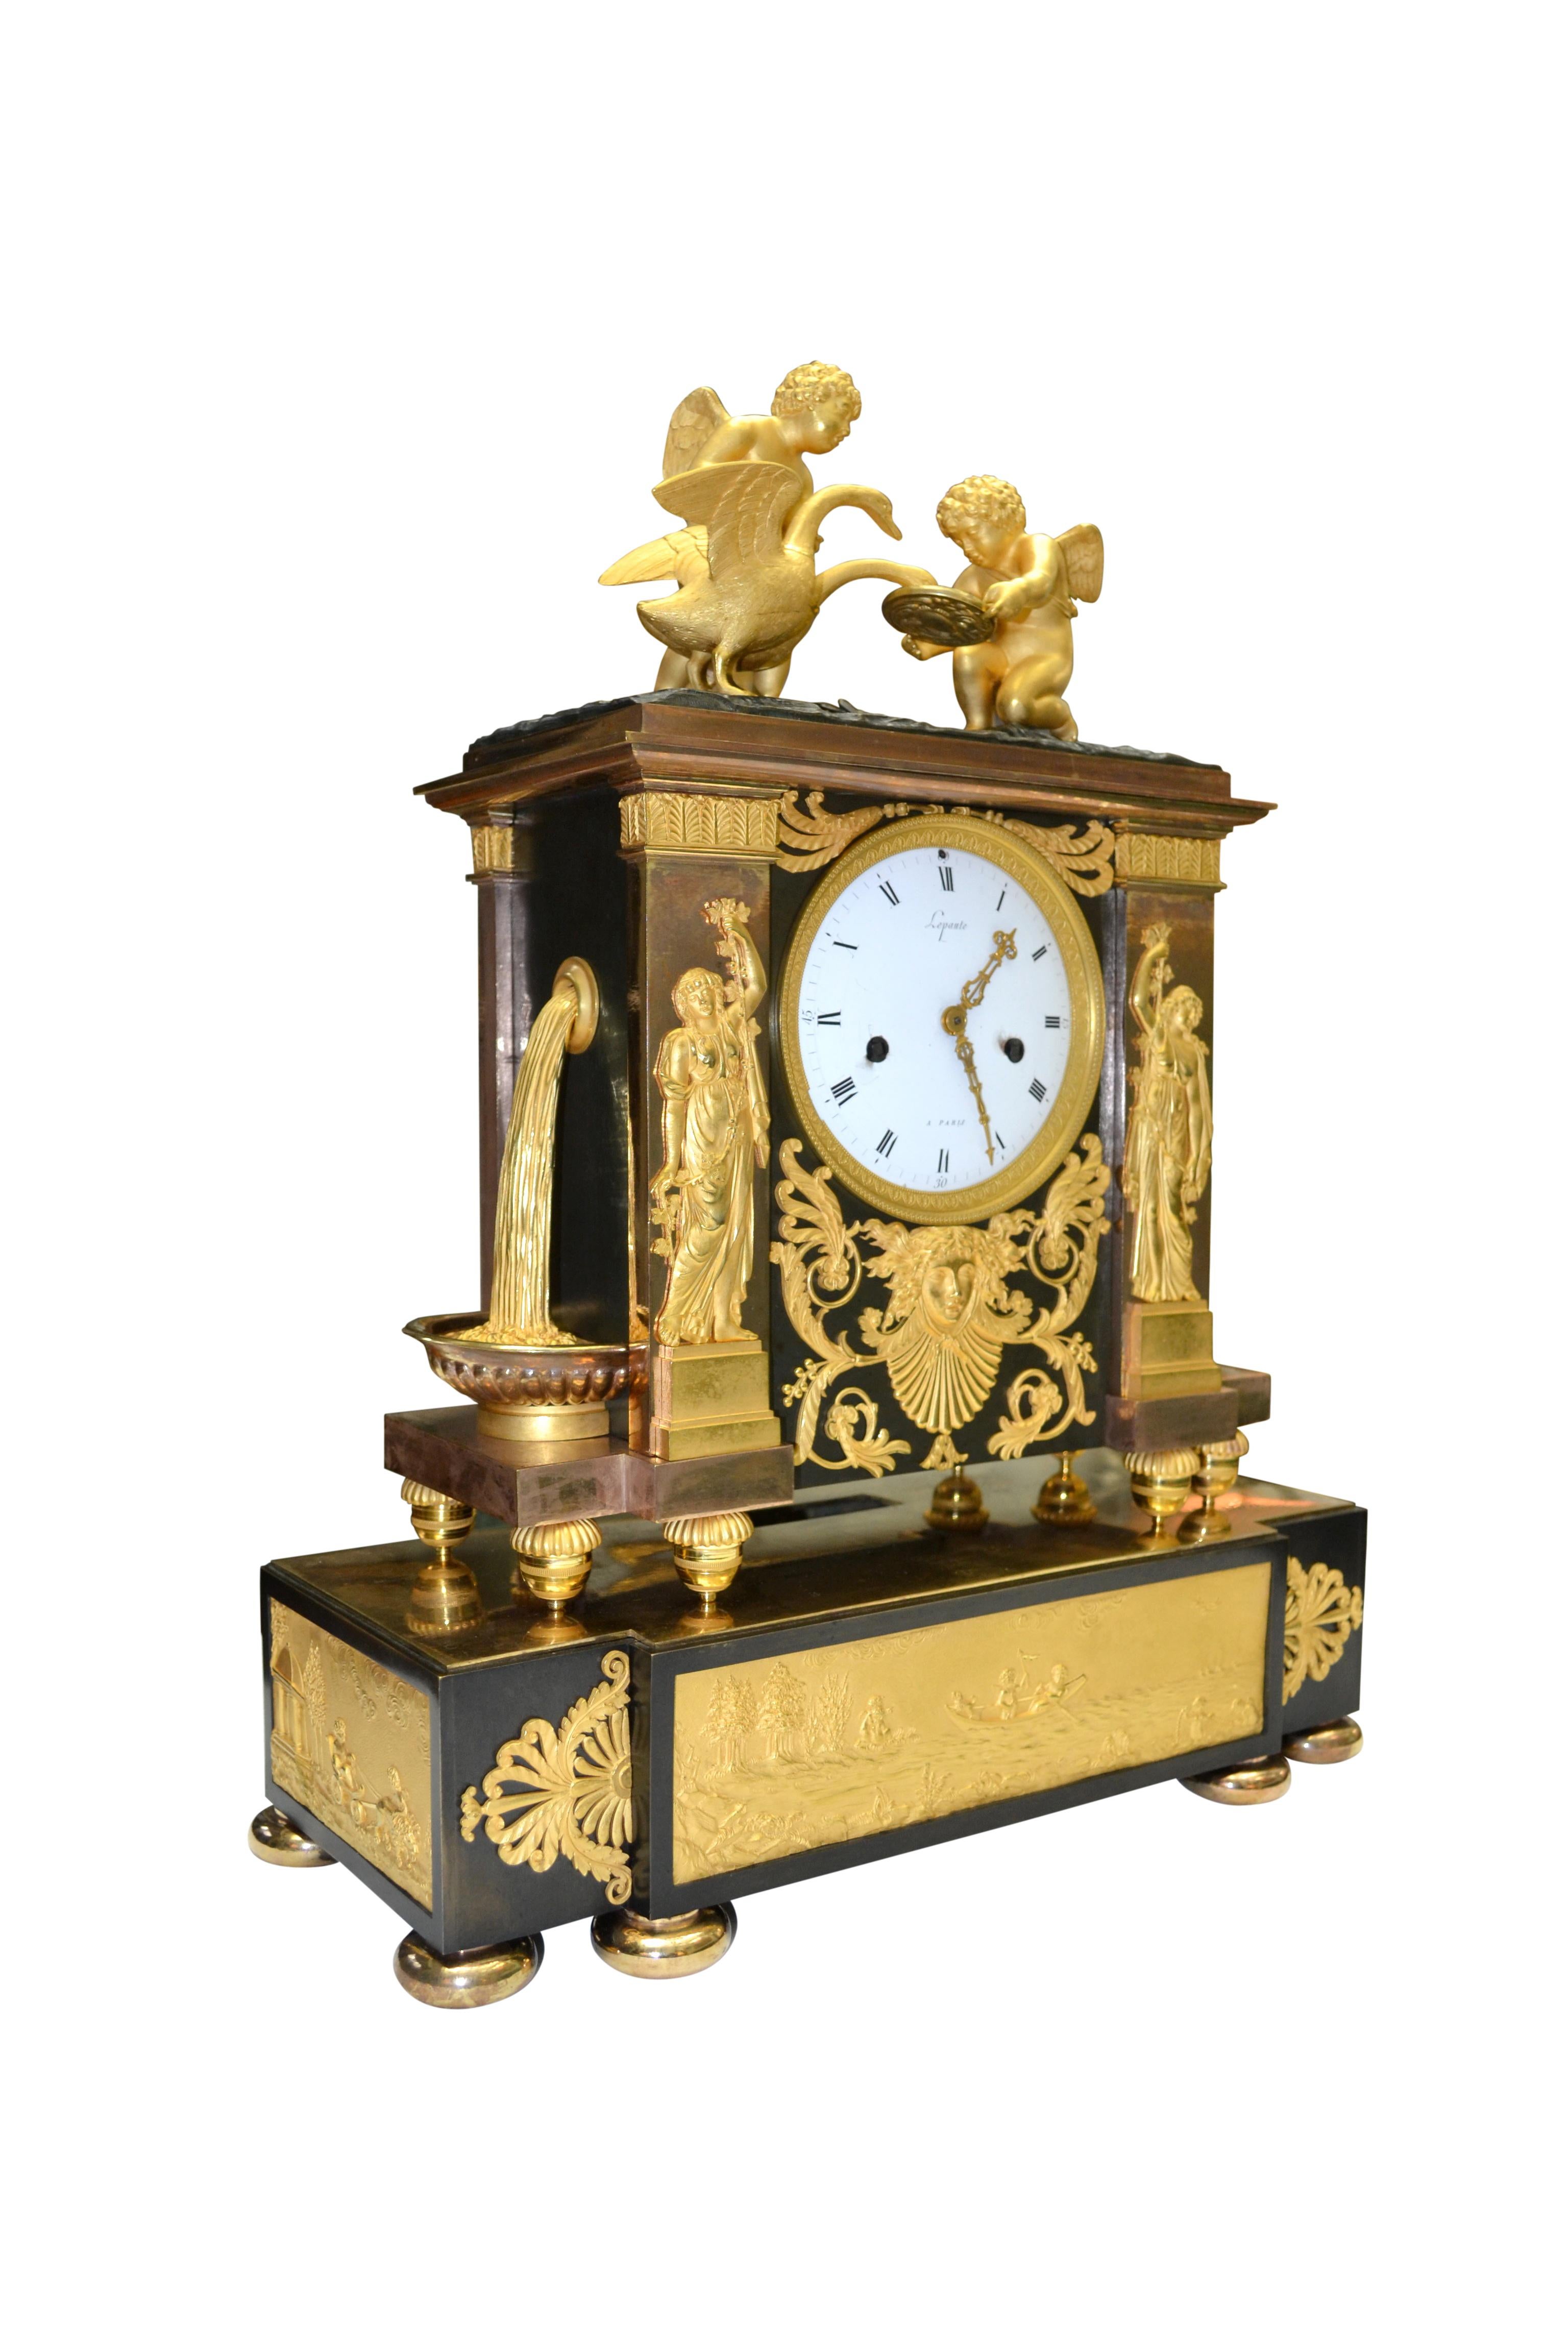 Une très rare et importante pendule Empire française signée par la dynastie de maîtres horlogers Jean-André Lepaute et son frère Jean-Baptiste Lepaute.

Le coffret, en forme de portail antique, est en deux parties, toutes deux en bronze patiné et